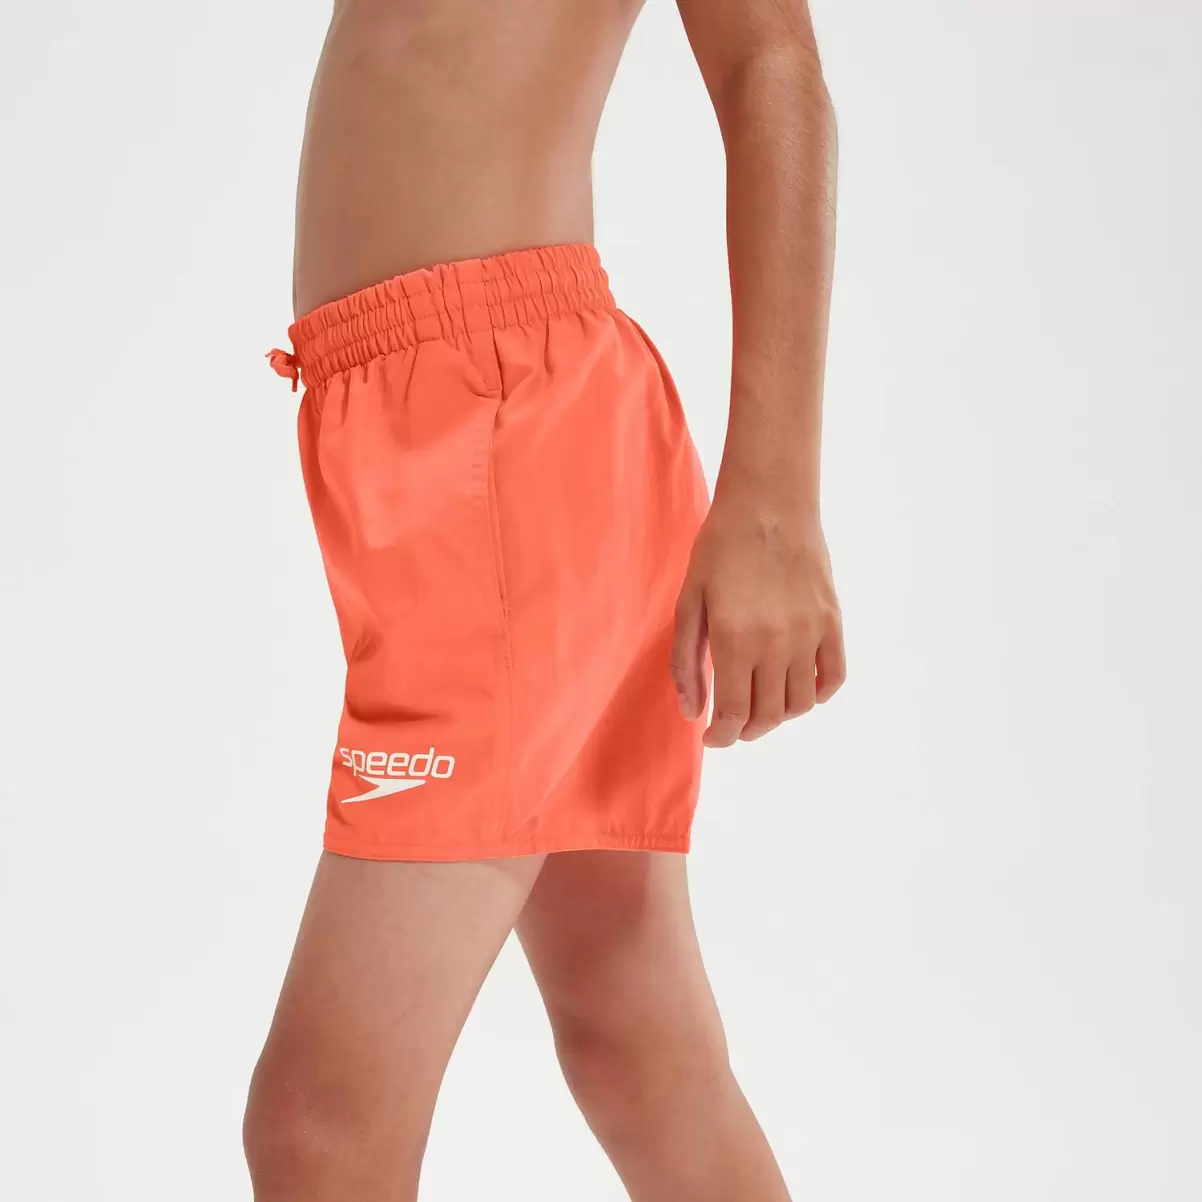 Bademode Kinder Speedo Essentials 33 Cm Schwimmshorts Für Jungen Orange - 4